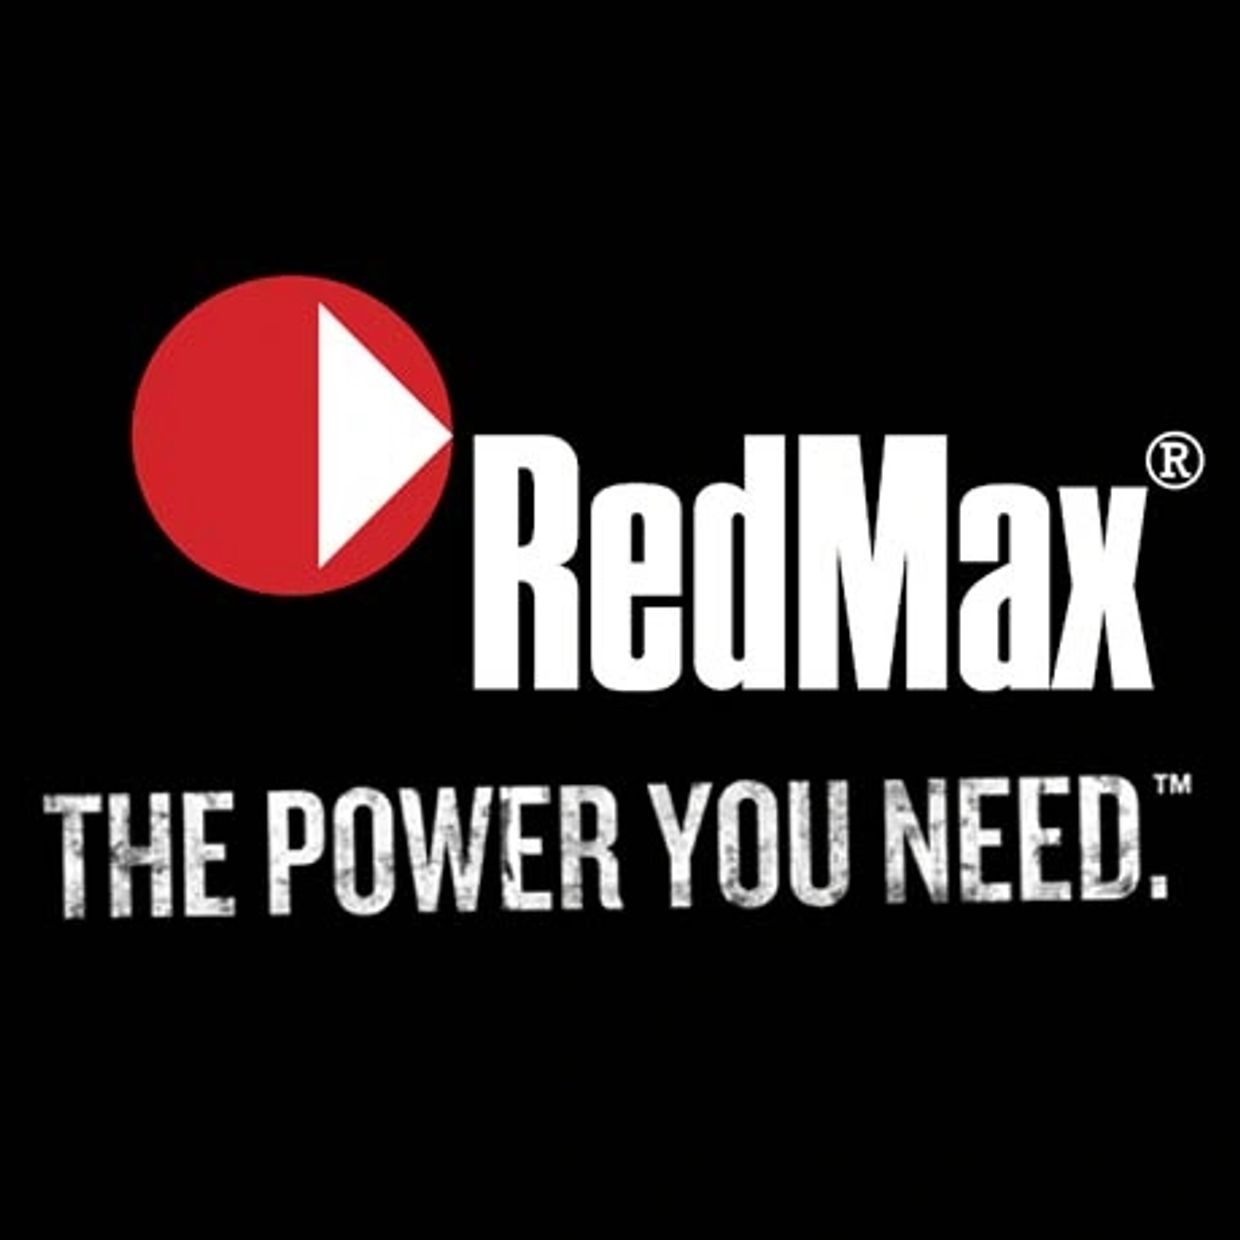 Redmax
Berlin Gravely Sales